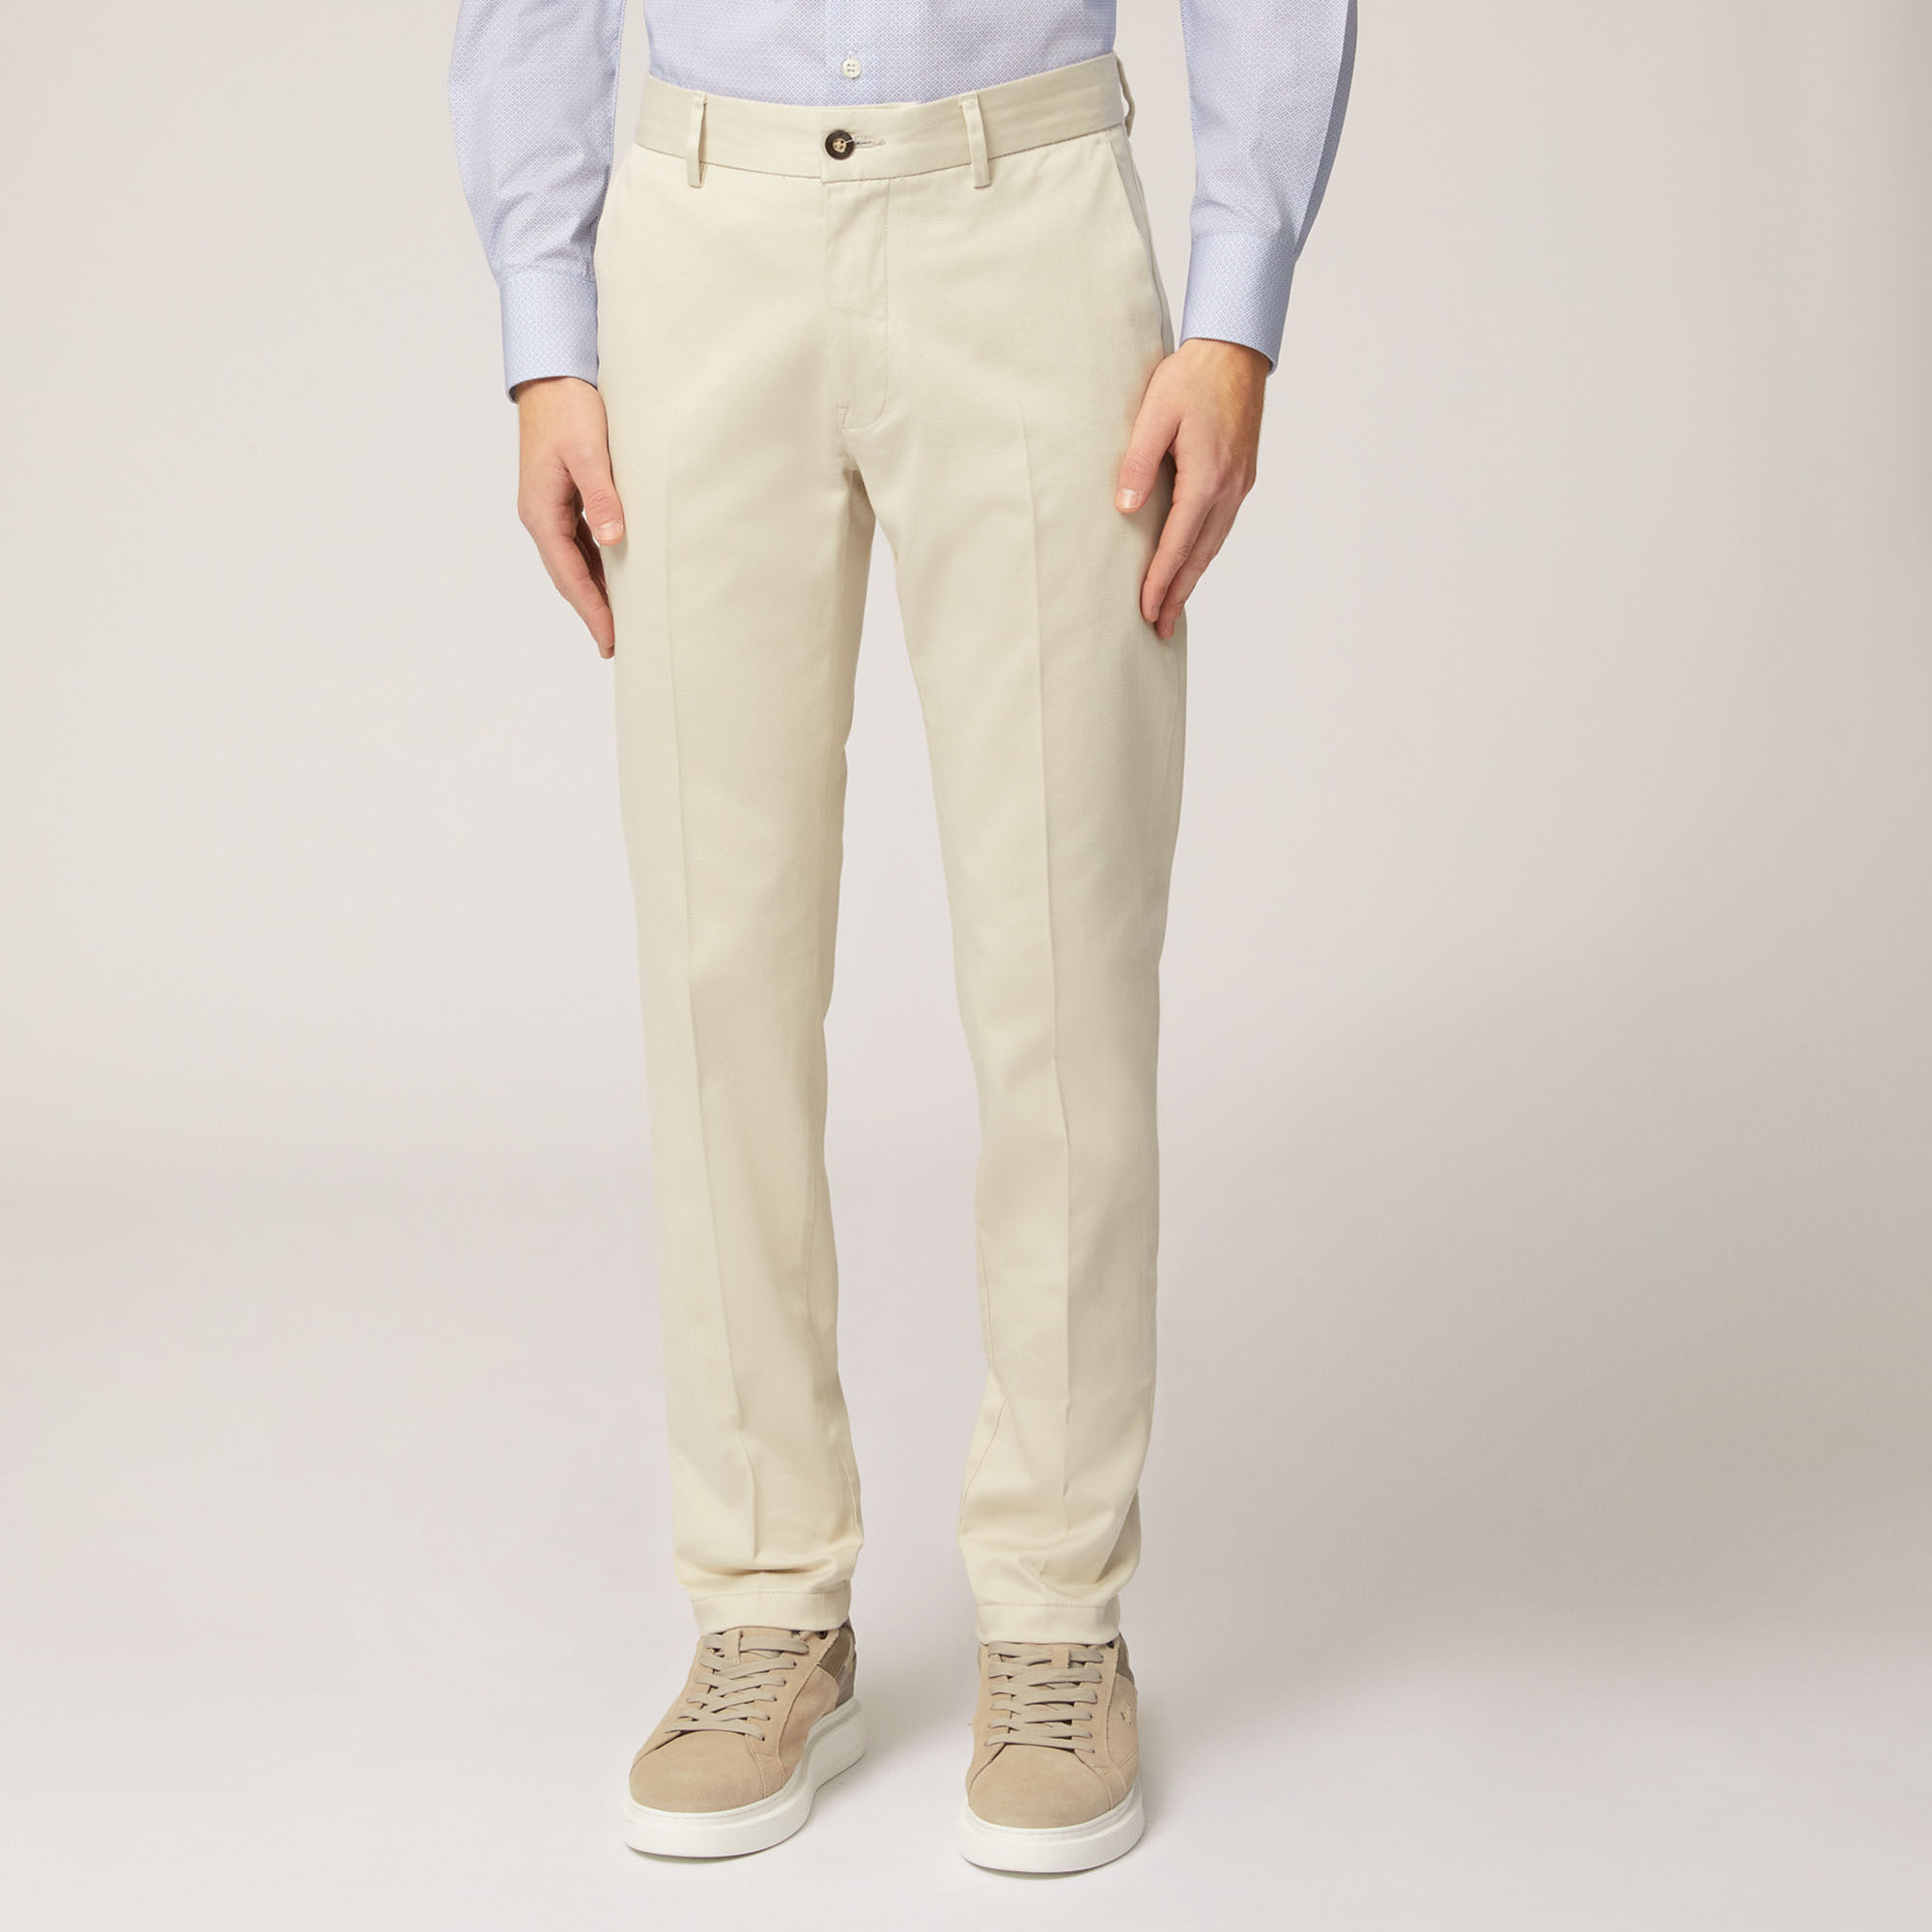 Pantalone Chino Narrow In Cotone Armaturato, Beige, large